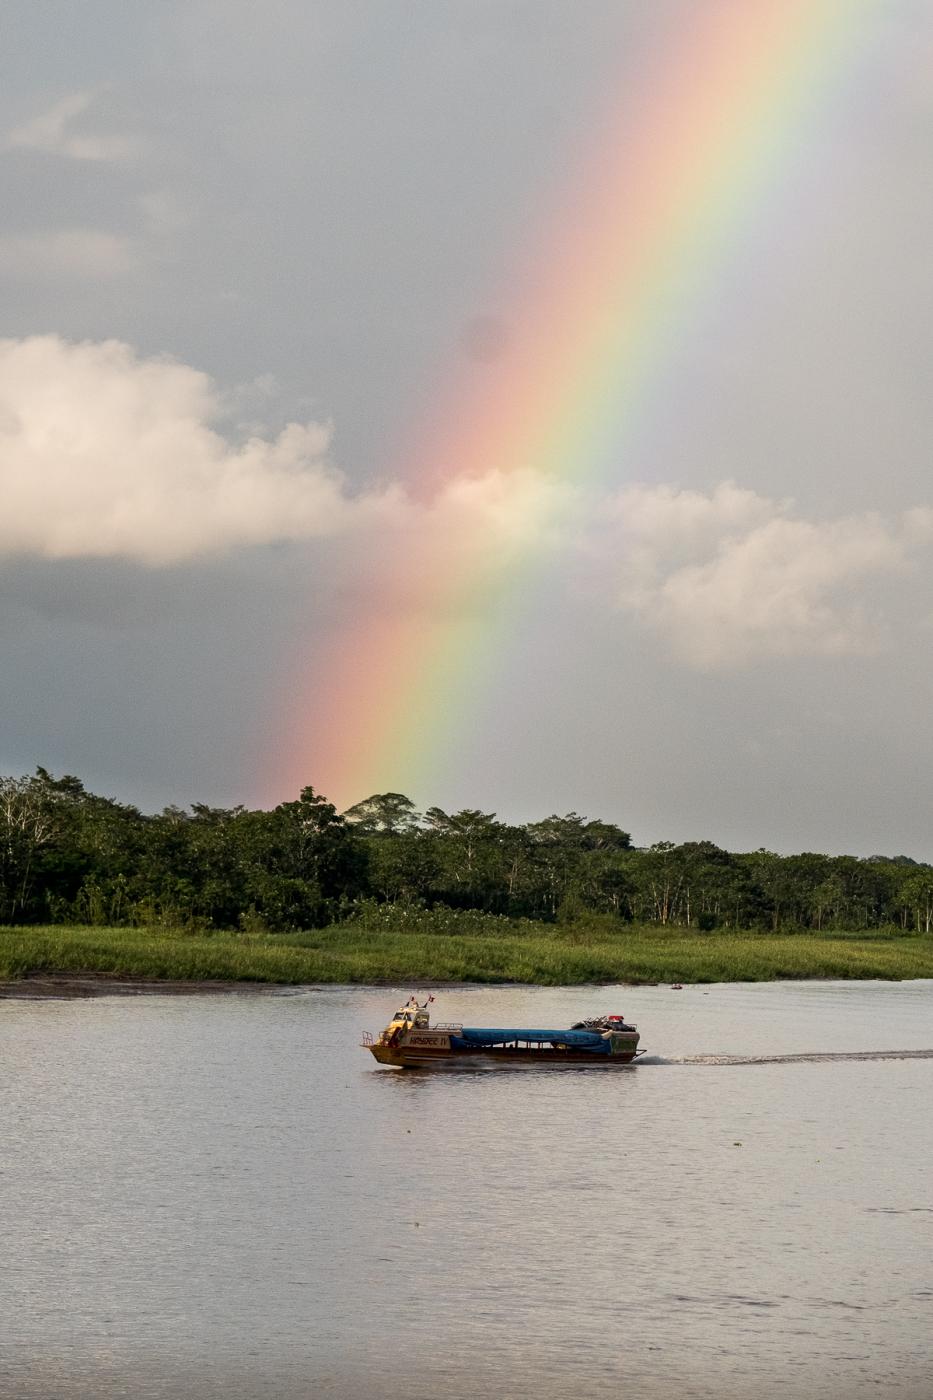 Guardianas - Amazonas: Saving Hunted Primates - 